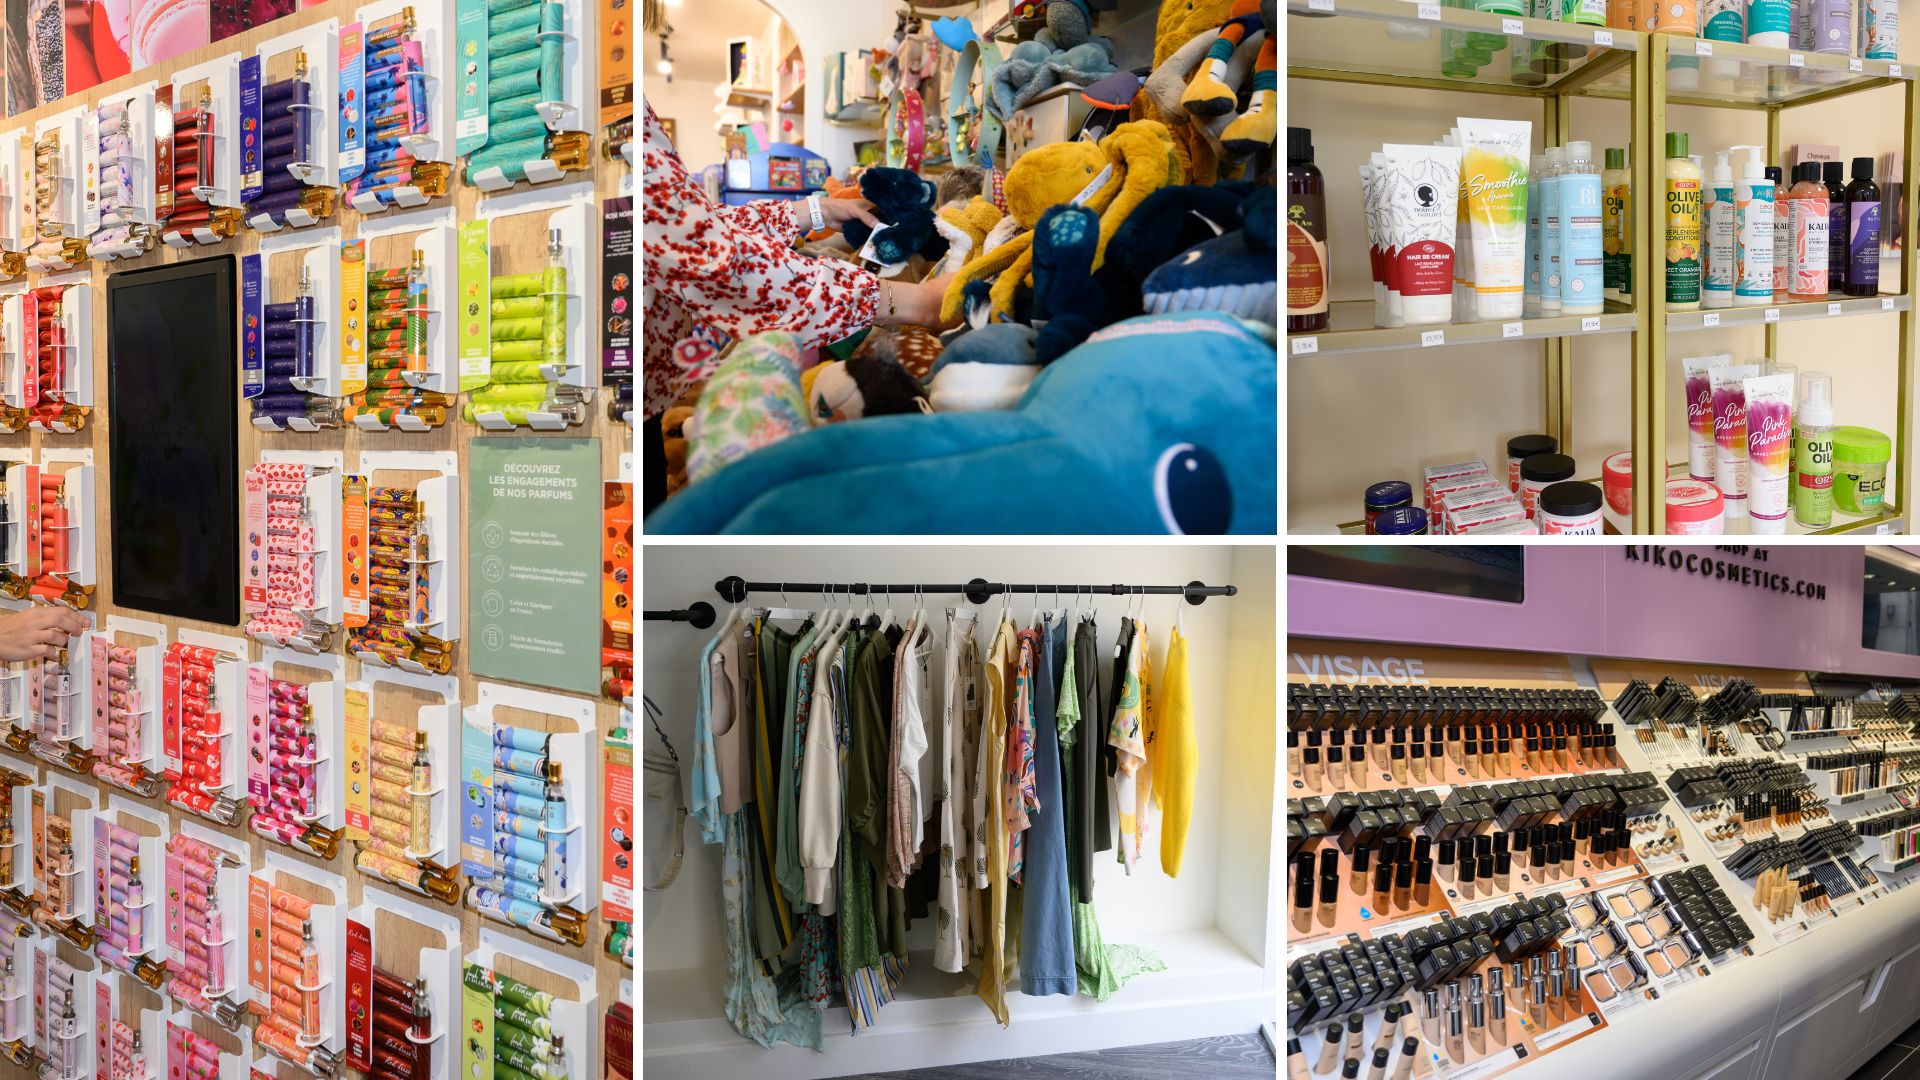 Les nouveaux commerces en centre-ville : La petite boutique, ADOPT, Anayi Sublime, Kiko Milano, et Chez Fleurette